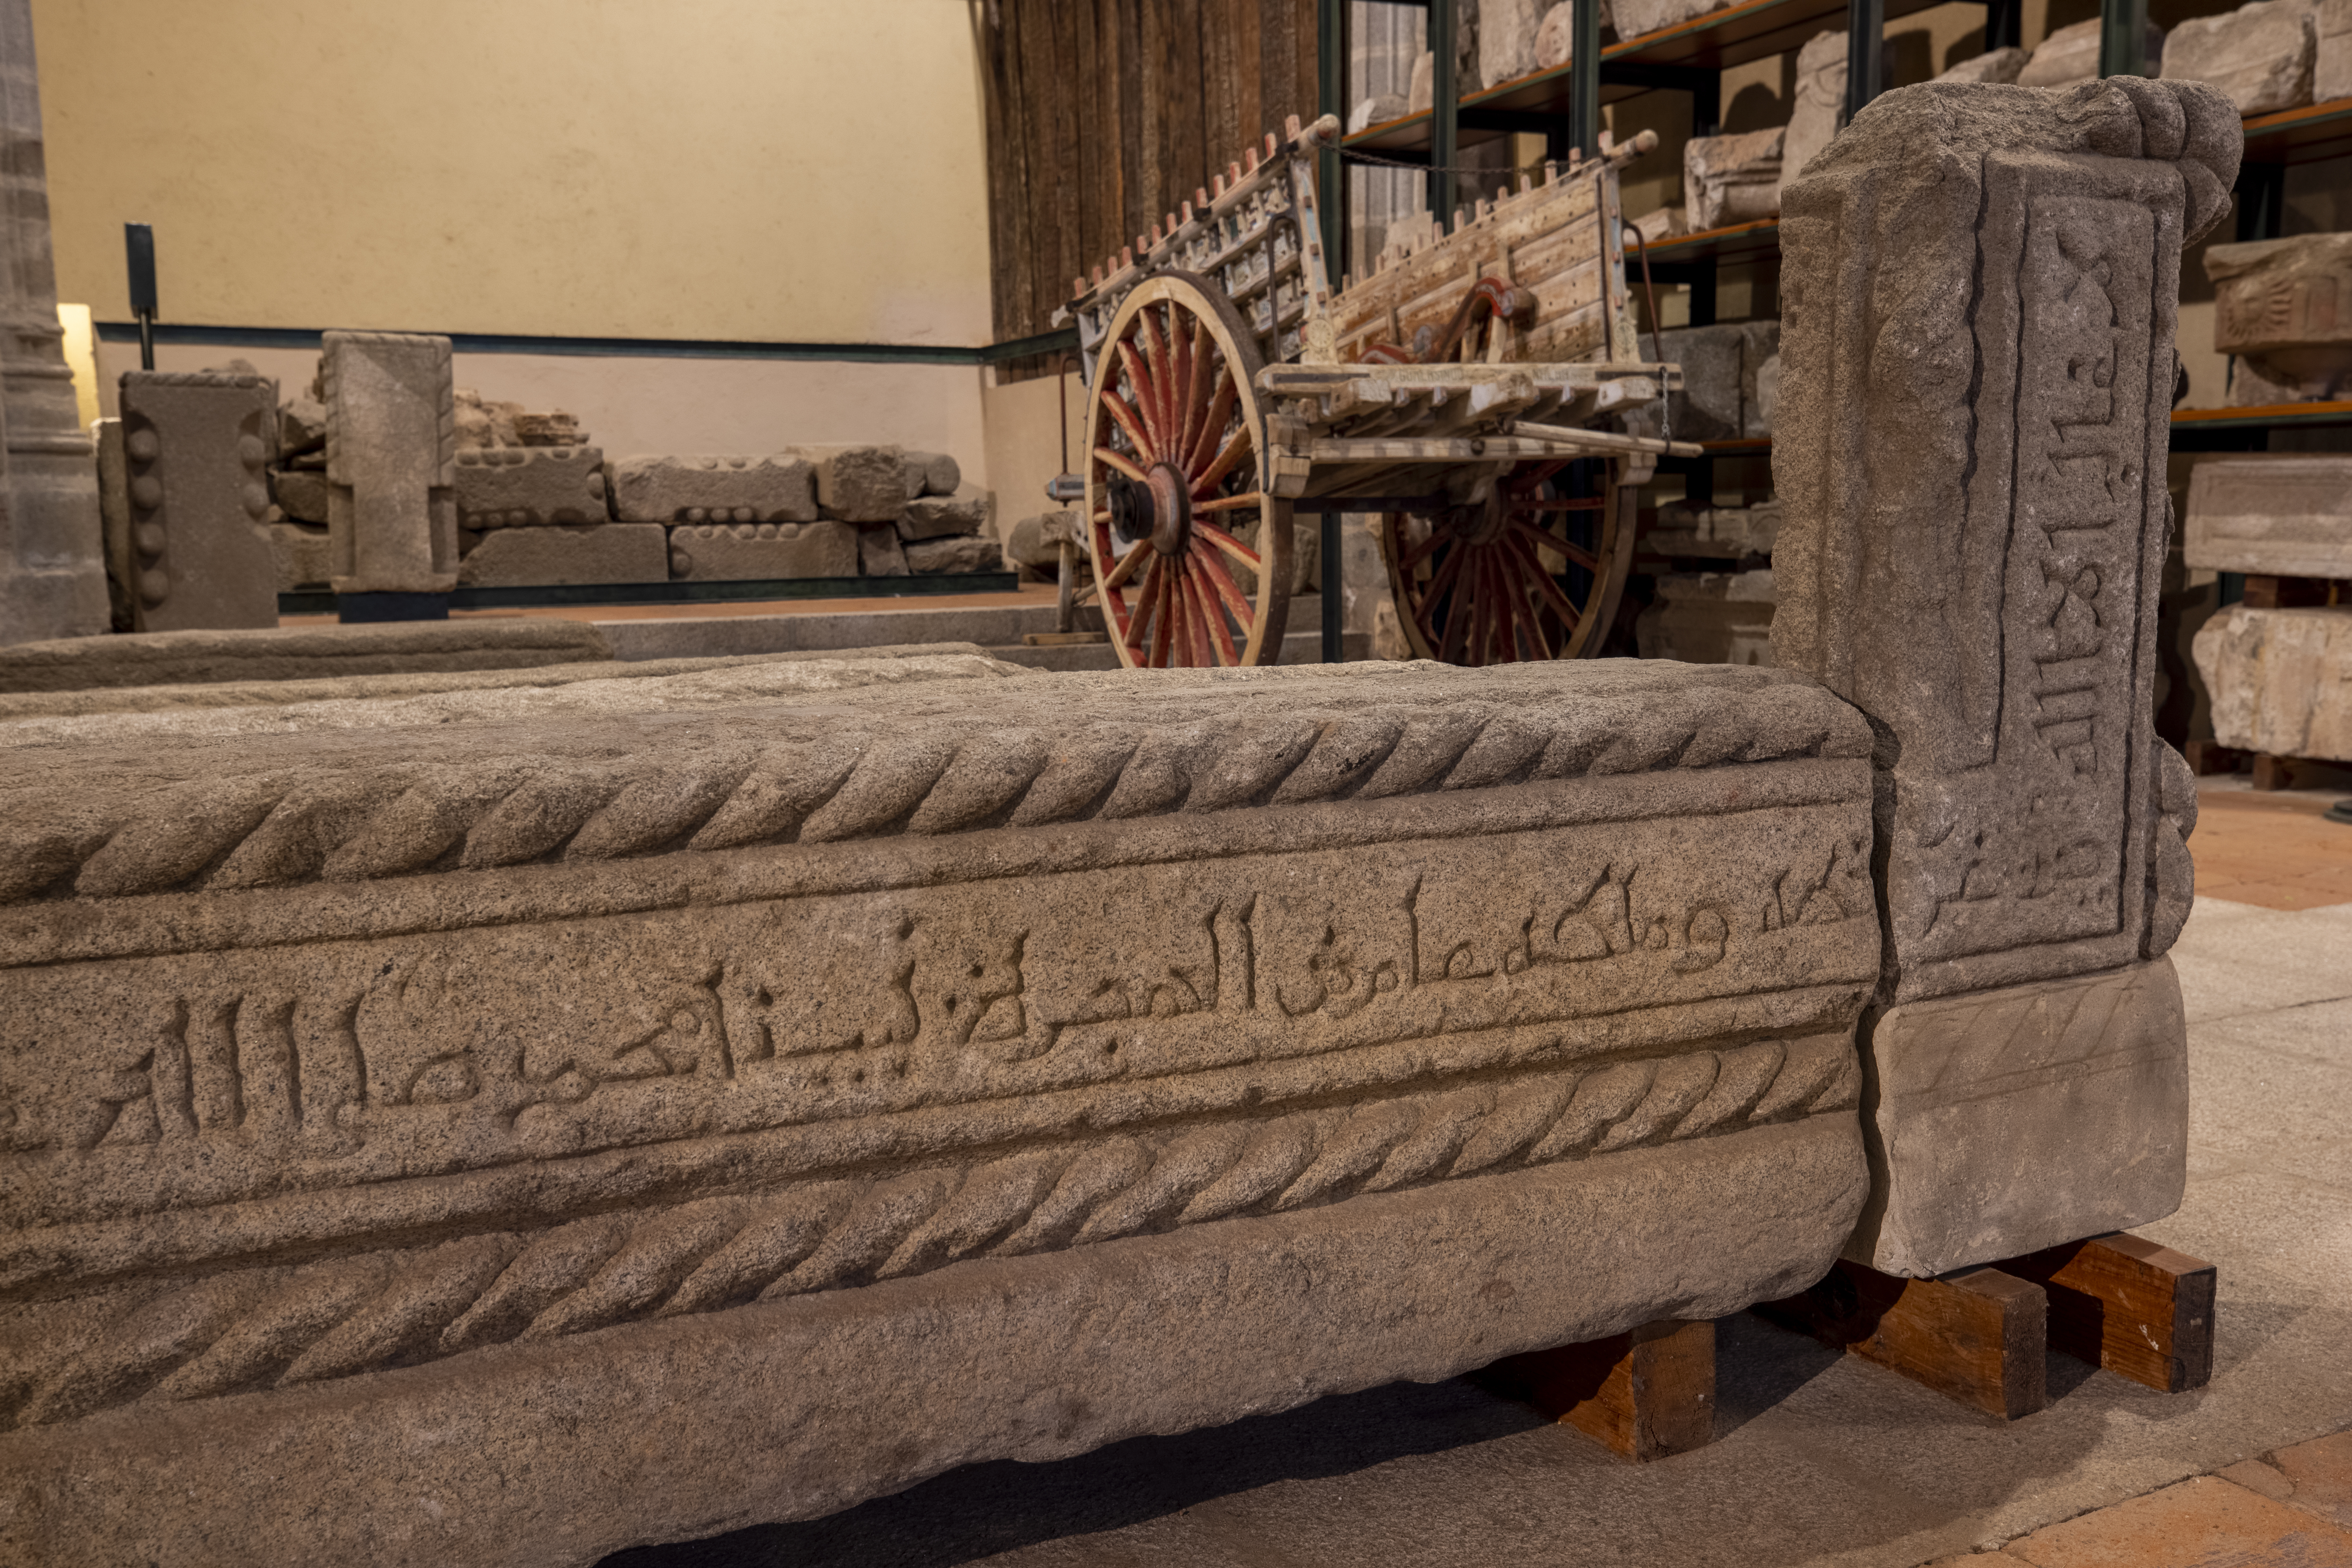 Sepulcro de ‘Abd Allāh ibn Yūsuf, el Rico Iglesia de Santiago897 H. = 1492 d.C.Granito / 53 x 164 x 39 / 78 x 38 x 17 [89/20/4/2y 3]. Almacén Visitable de Santo Tomé